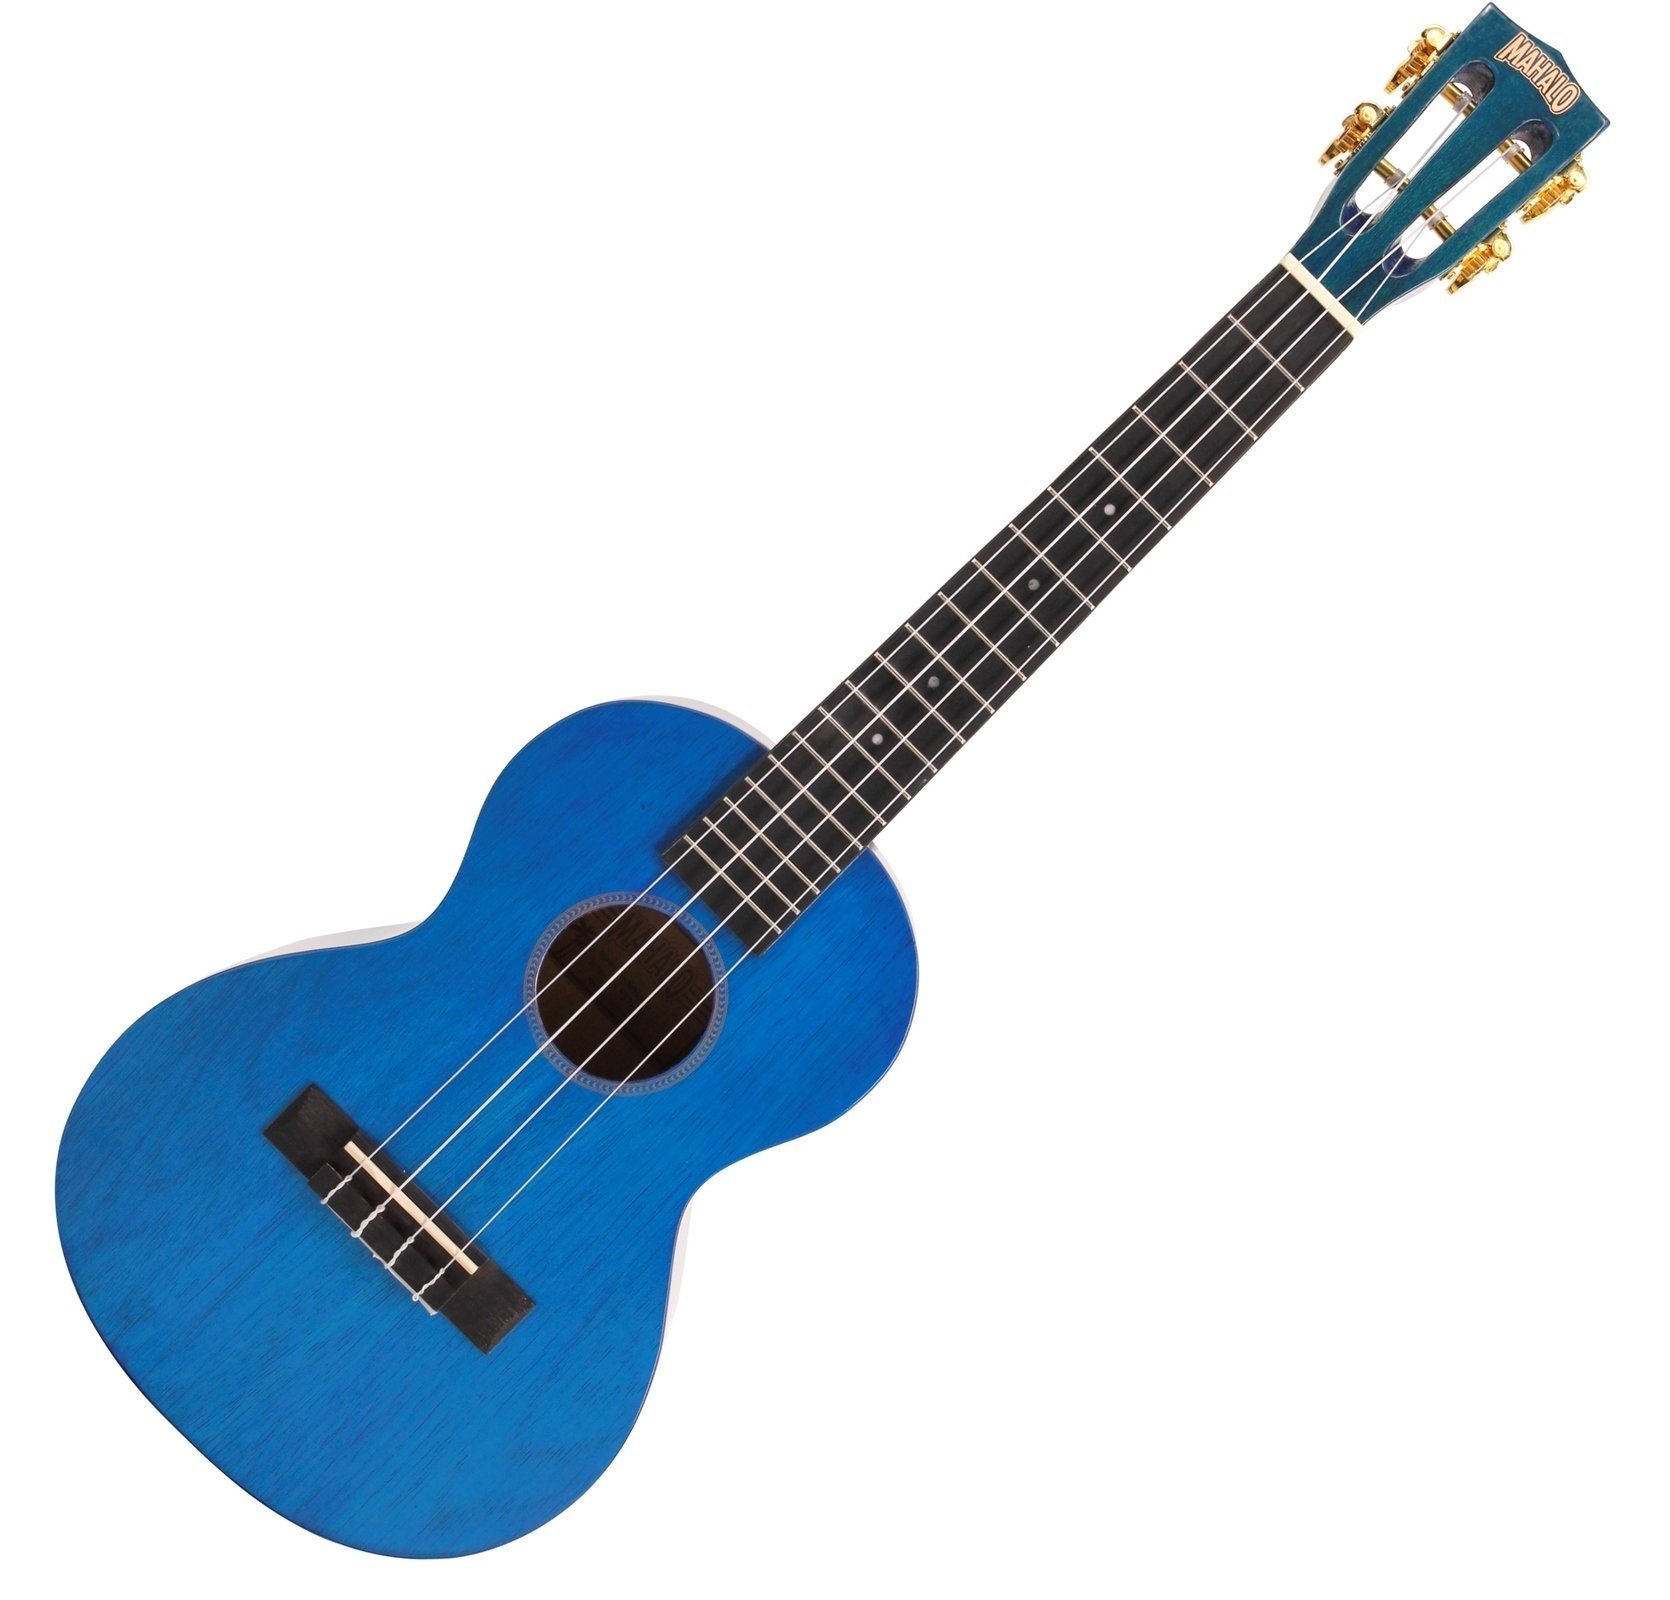 Tenor-ukuleler Mahalo Tenor Ukulele Transparent Blue